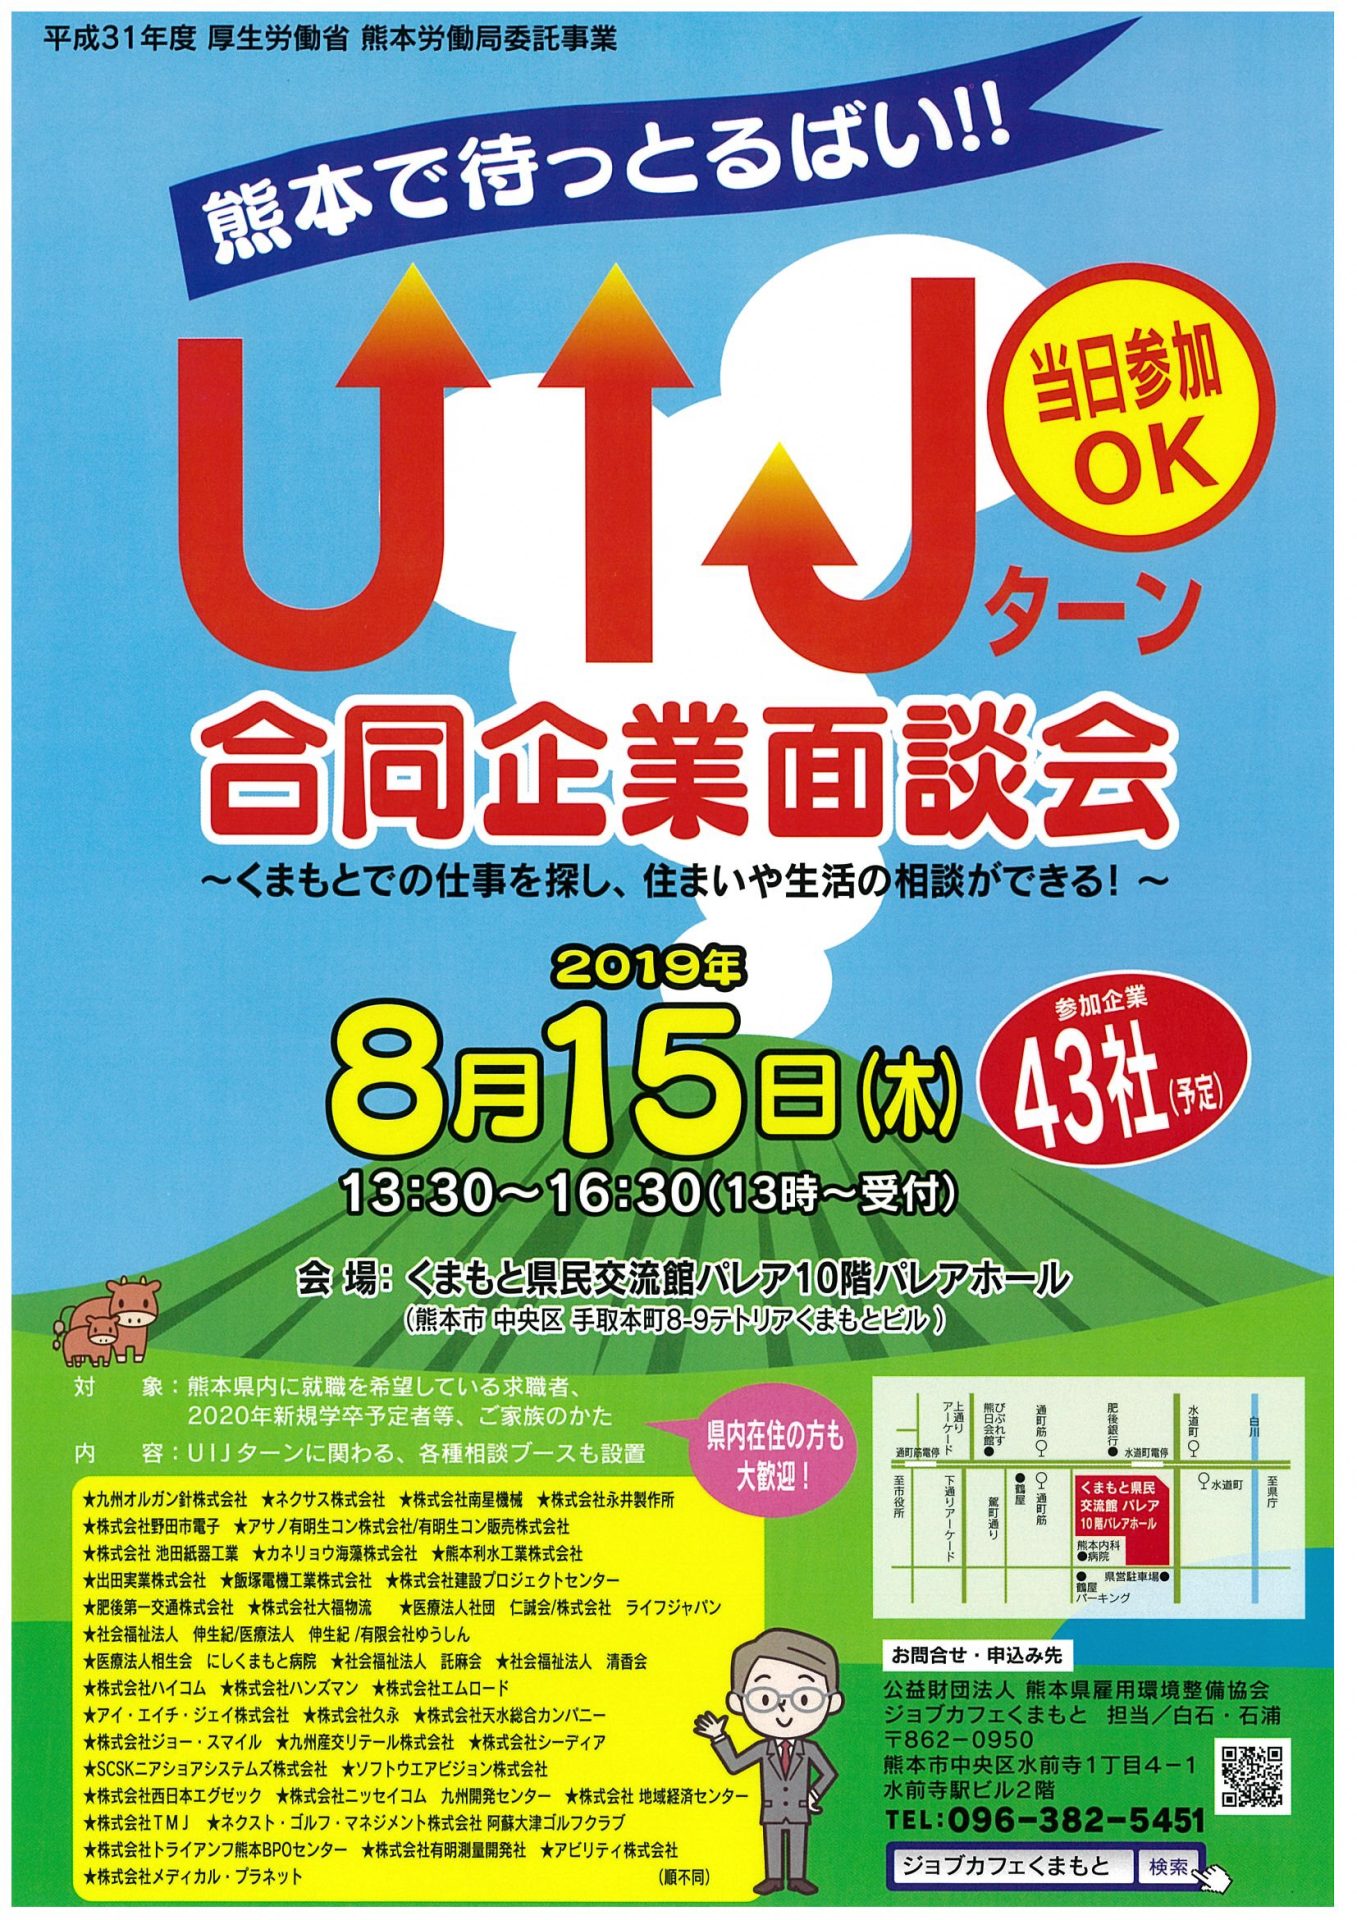 熊本で待っとるばい!!UIJターン合同企業面談会開催【熊本】 | 移住関連イベント情報